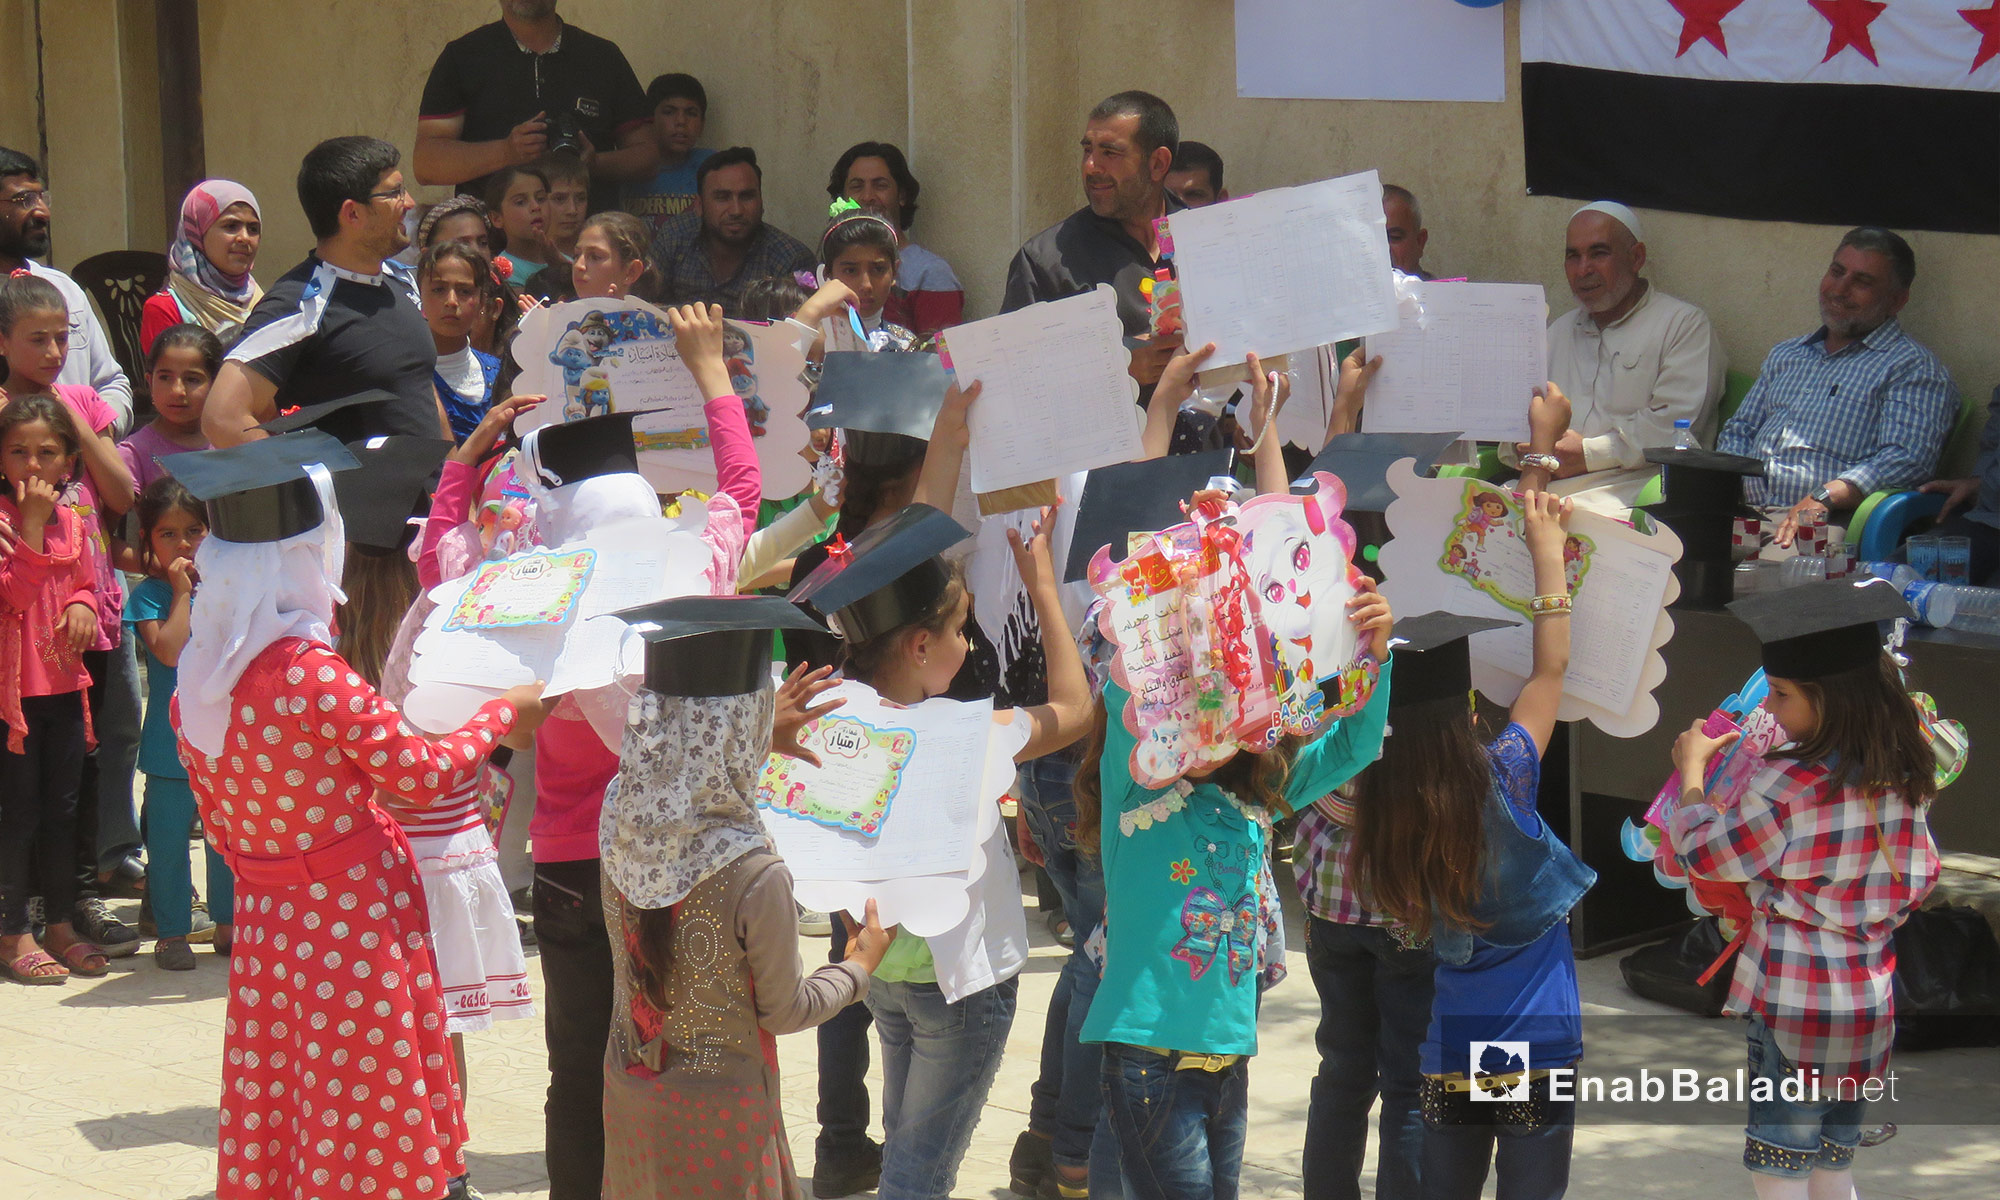 أطفال يحملون شهاداتهم خلال حفلٍ للمتفوقين  في صوران شمال حلب - 25 أيار 2017 (عنب بلدي)